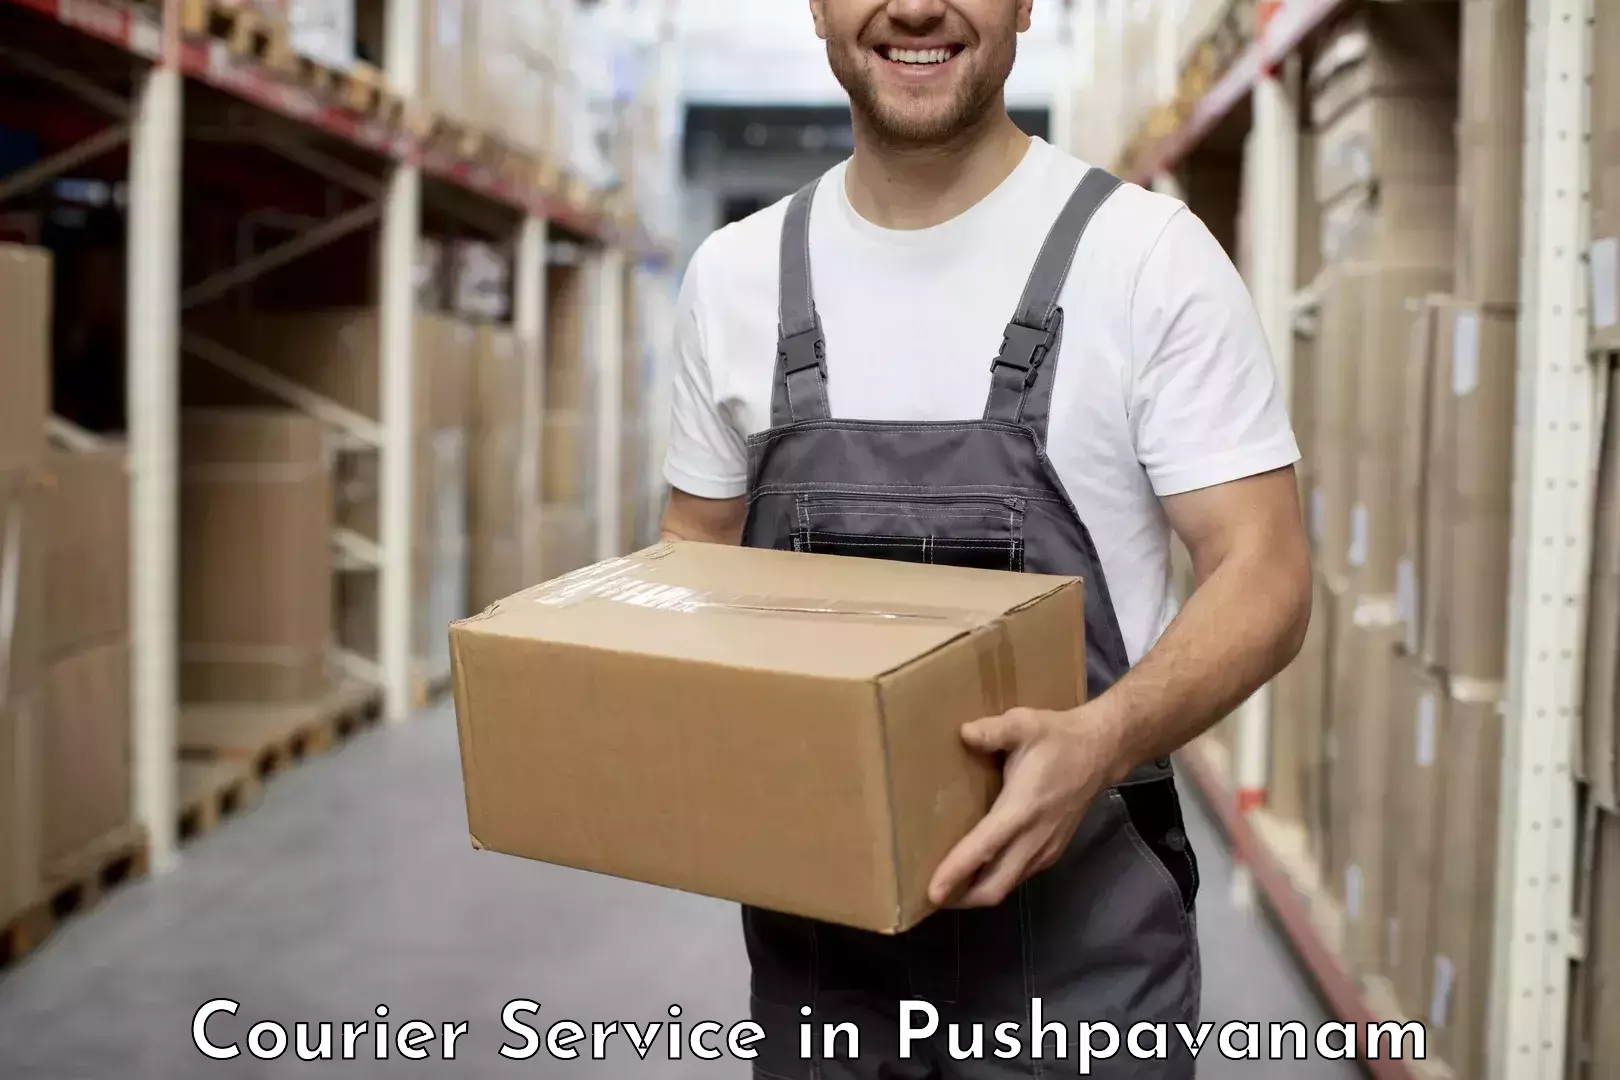 Professional parcel services in Pushpavanam